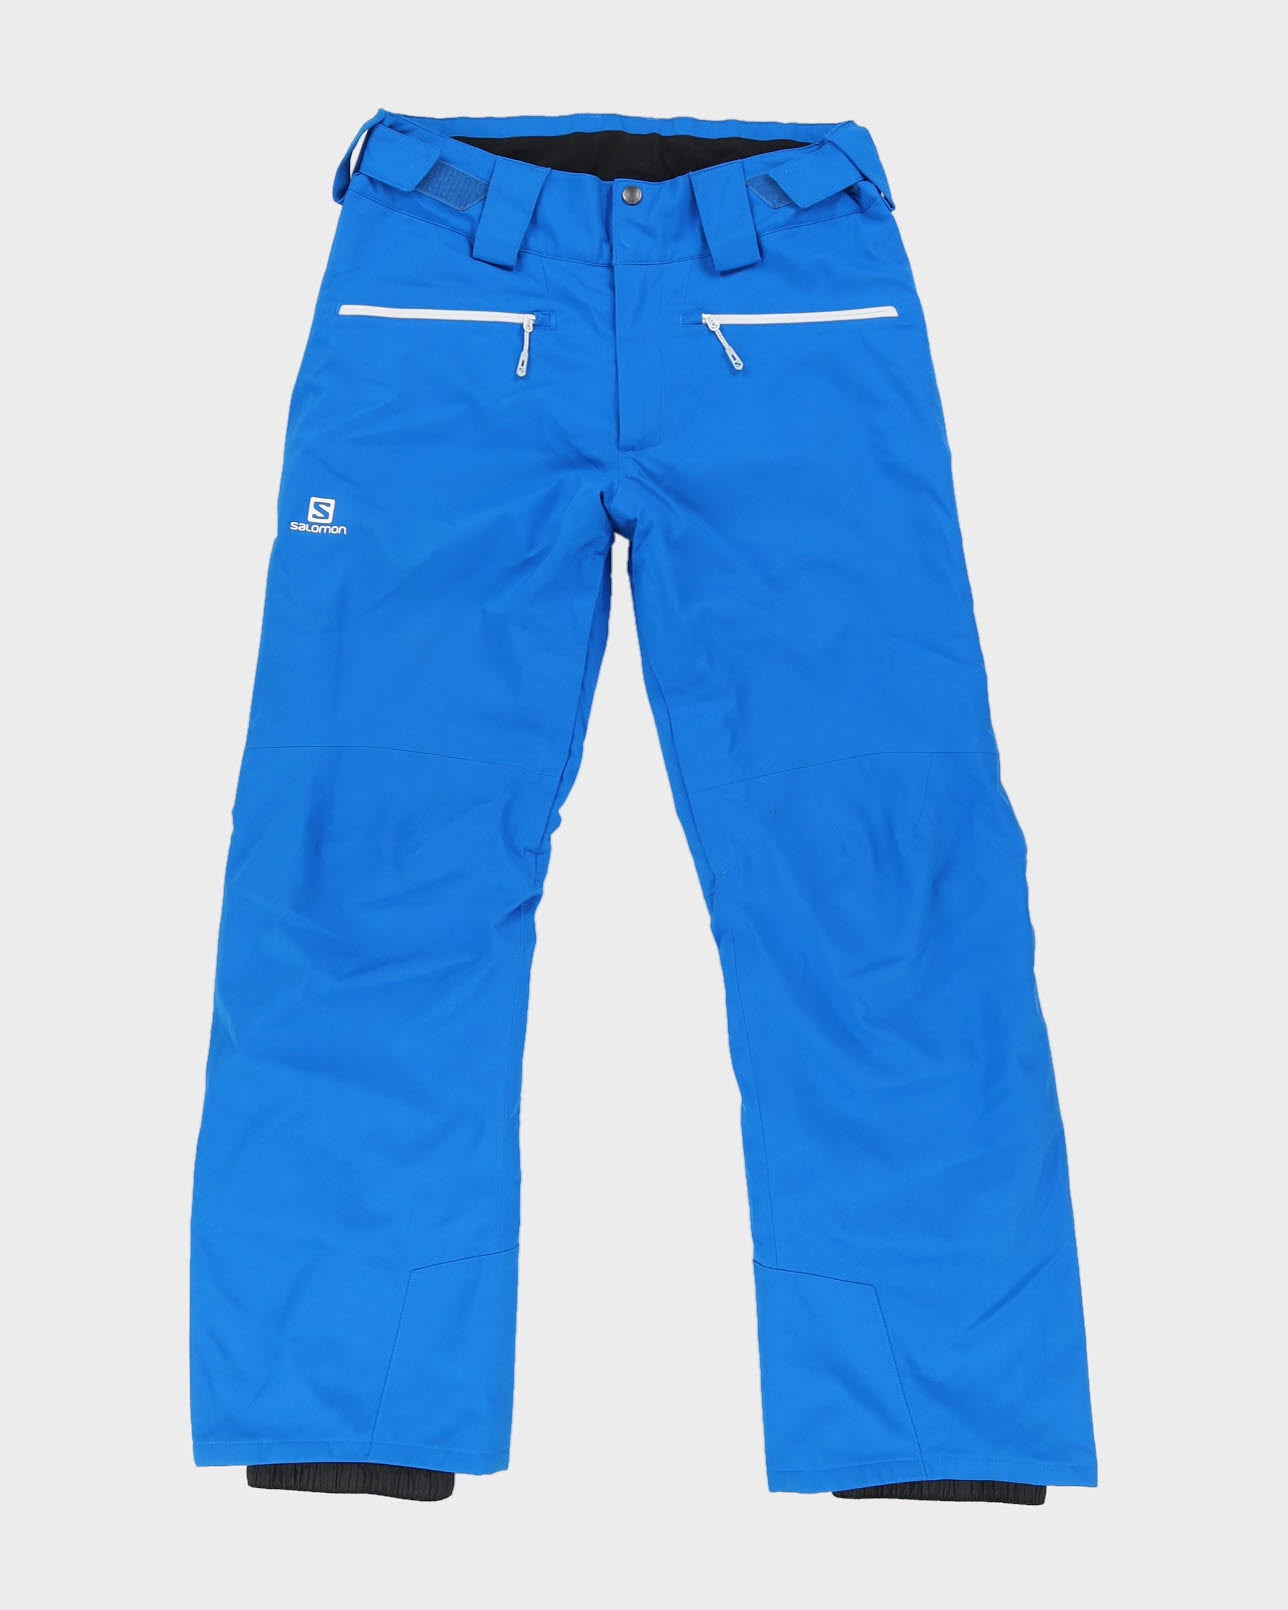 Salomon Blue Ski Trousers - W34 L32